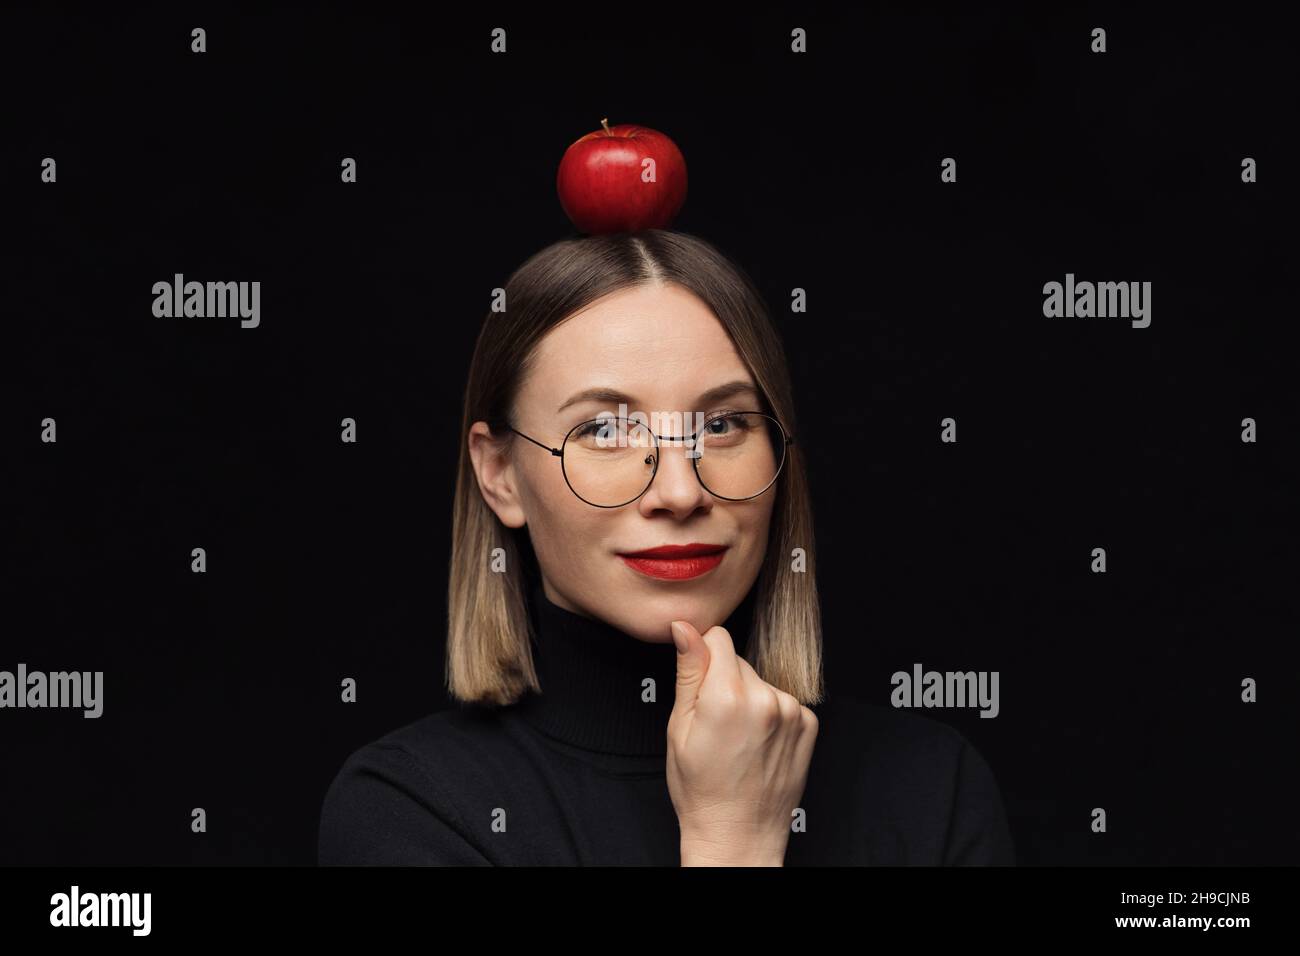 Gros plan sourire femme portrait portant des lunettes avec des cadres noirs, avec des lèvres rouges, regardant l'appareil photo avec une pomme rouge sur la tête sur fond noir maquette. Banque D'Images